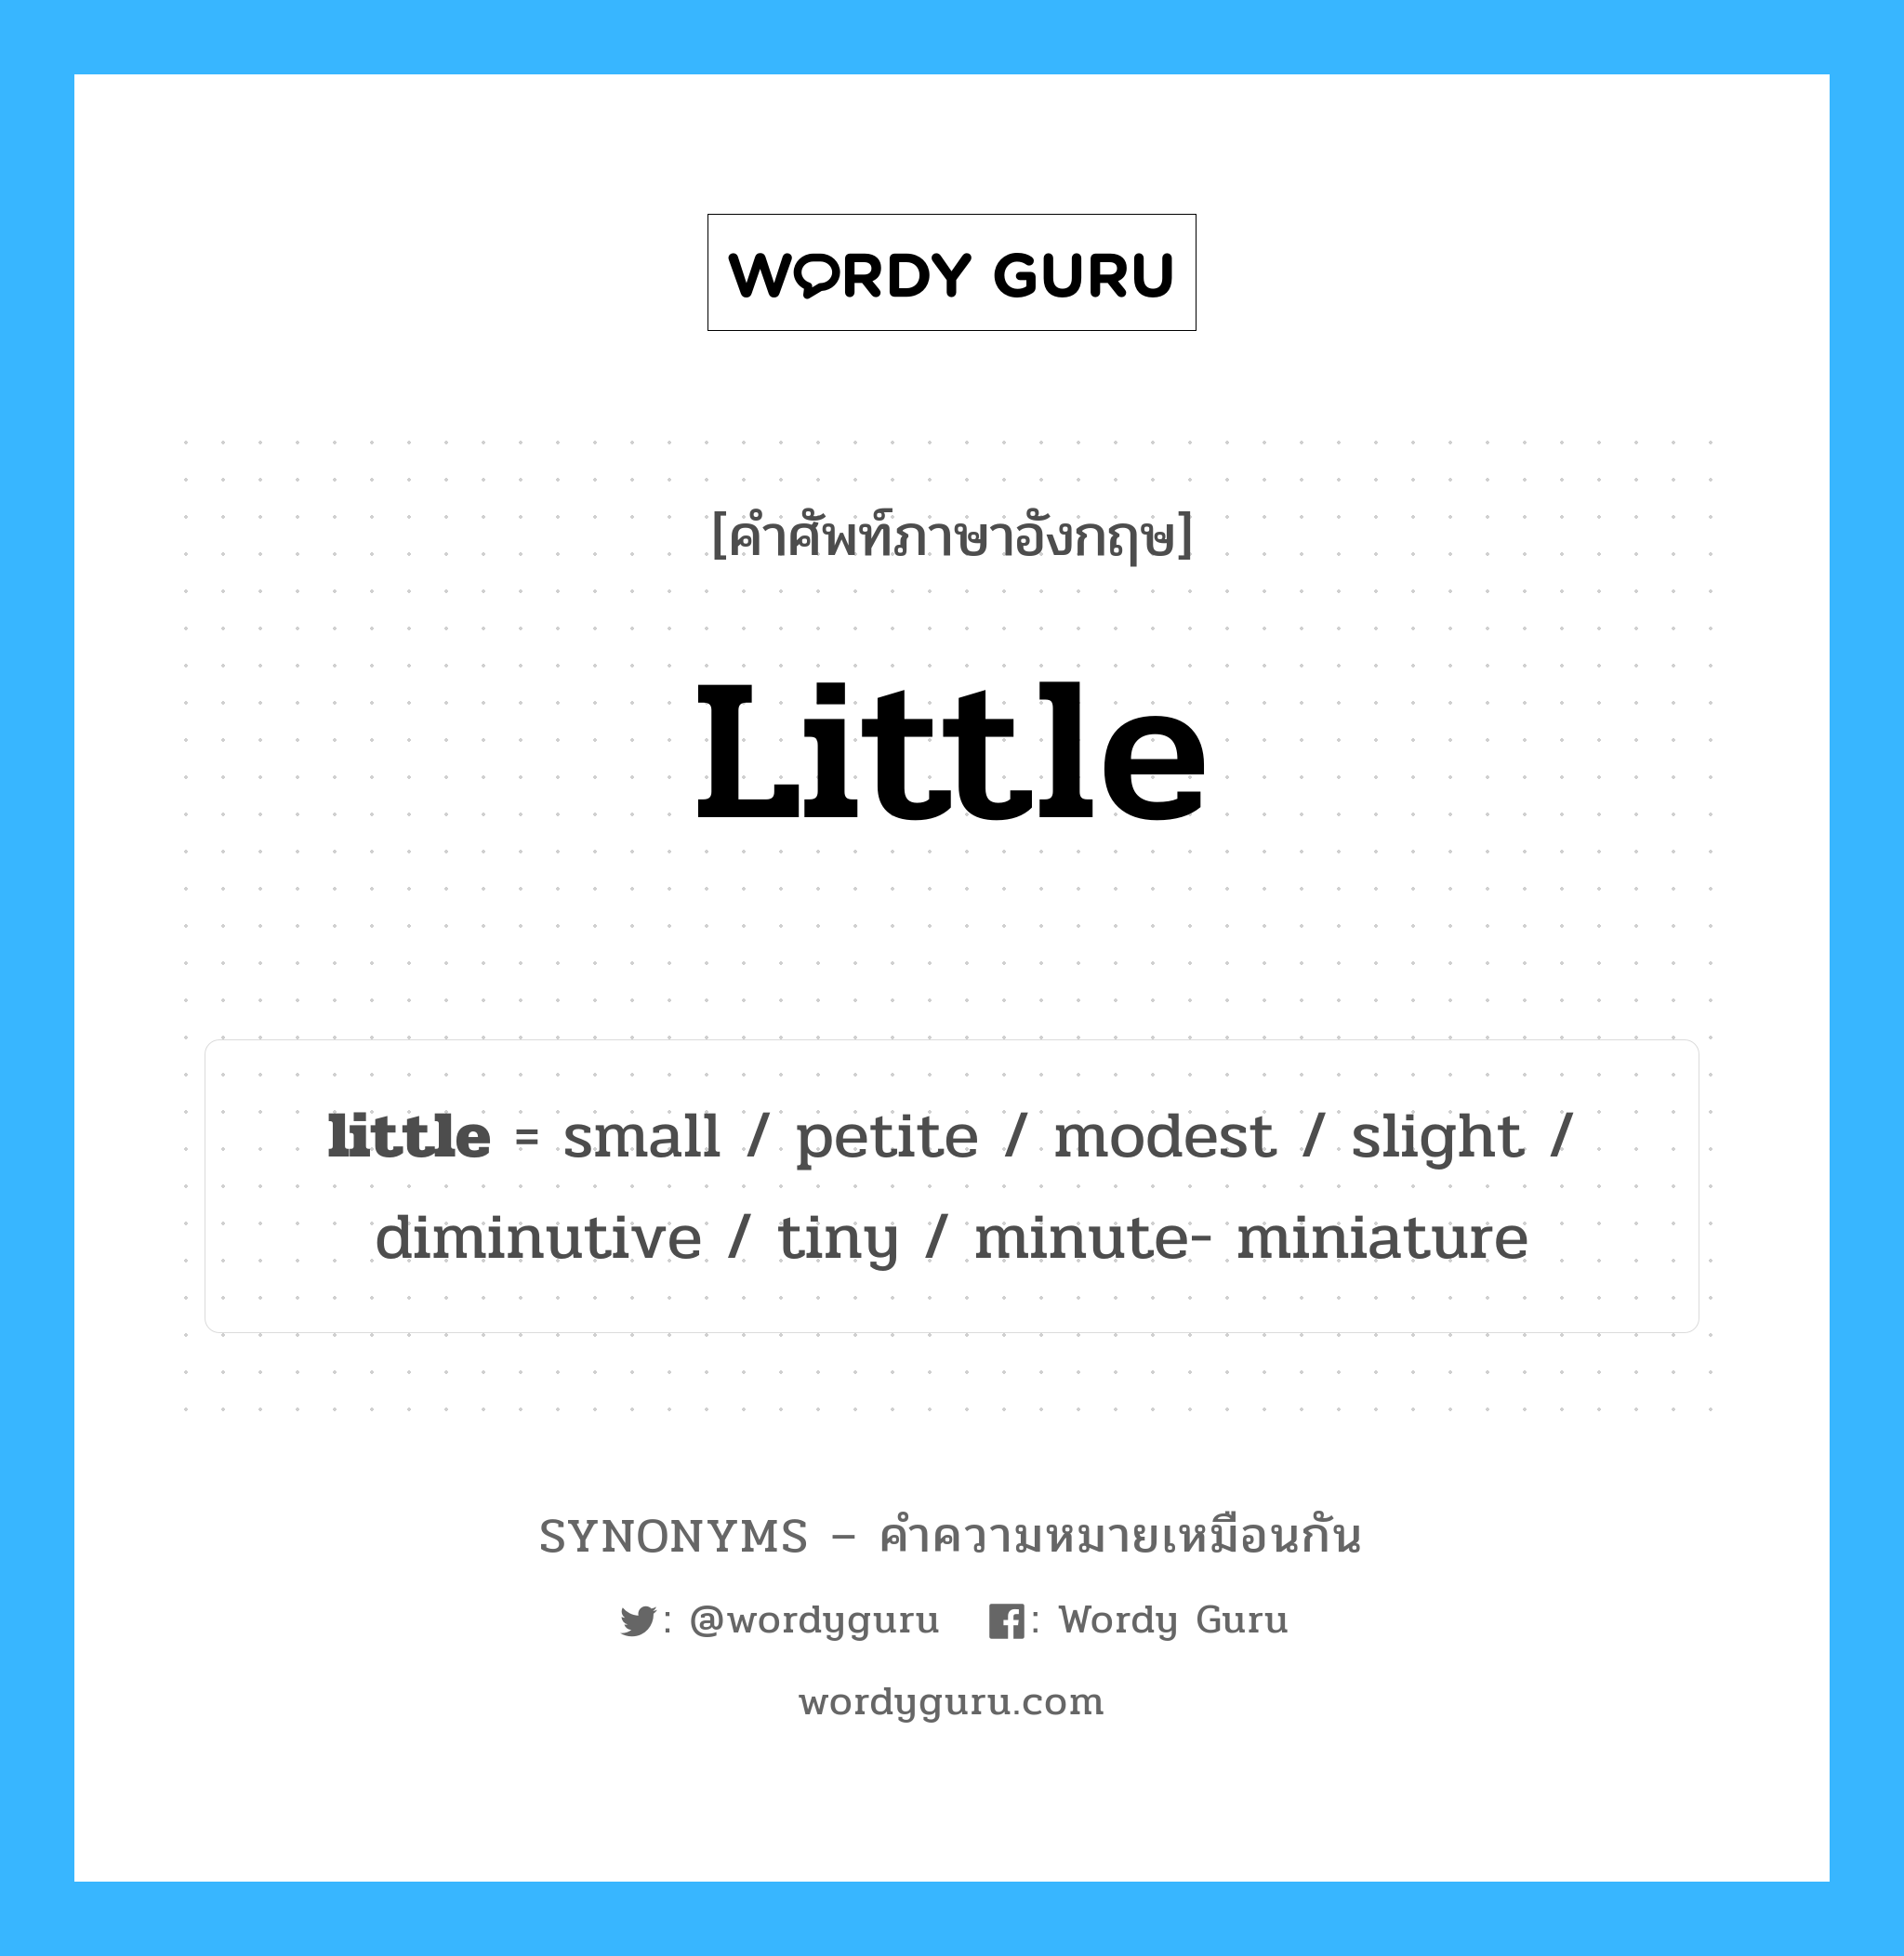 diminutive เป็นหนึ่งใน tiny และมีคำอื่น ๆ อีกดังนี้, คำศัพท์ภาษาอังกฤษ diminutive ความหมายคล้ายกันกับ little แปลว่า เล็ก หมวด little